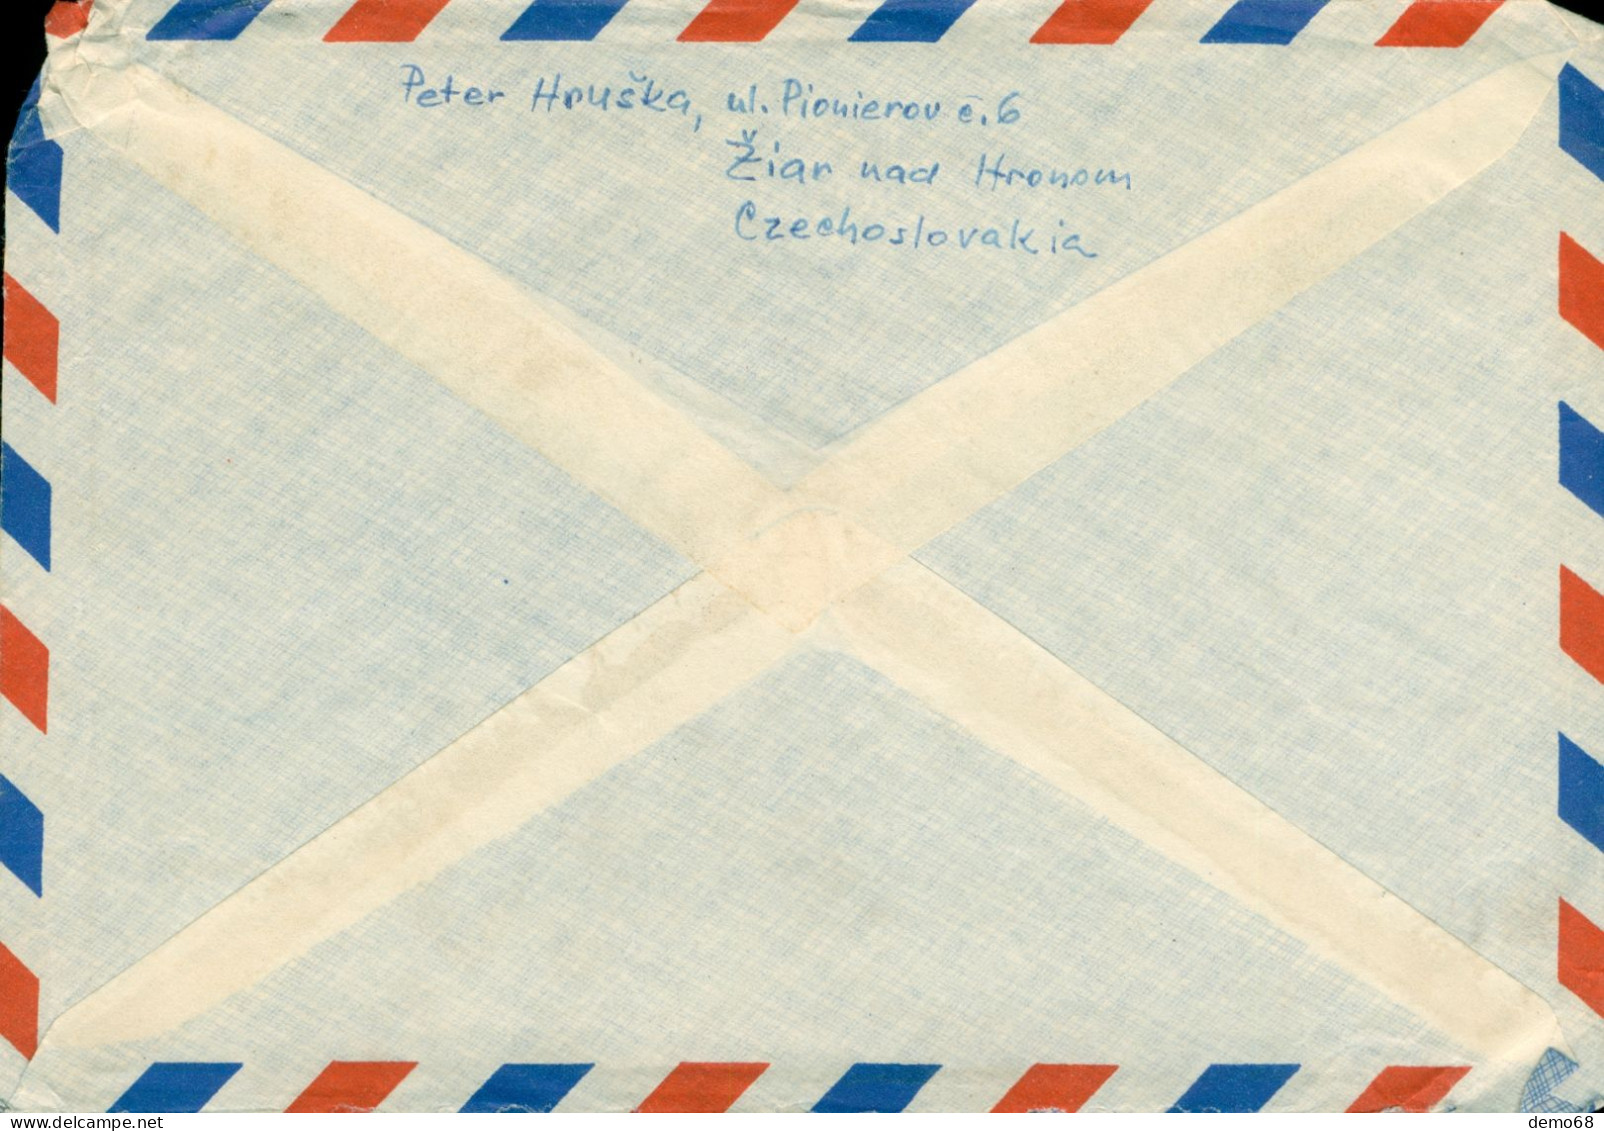 Tchécoslovaquie Ceskoslovensko 1959 ?? Timbre Sur Enveloppe Poste Aérienne  Air Mail  Bon état - Luchtpost